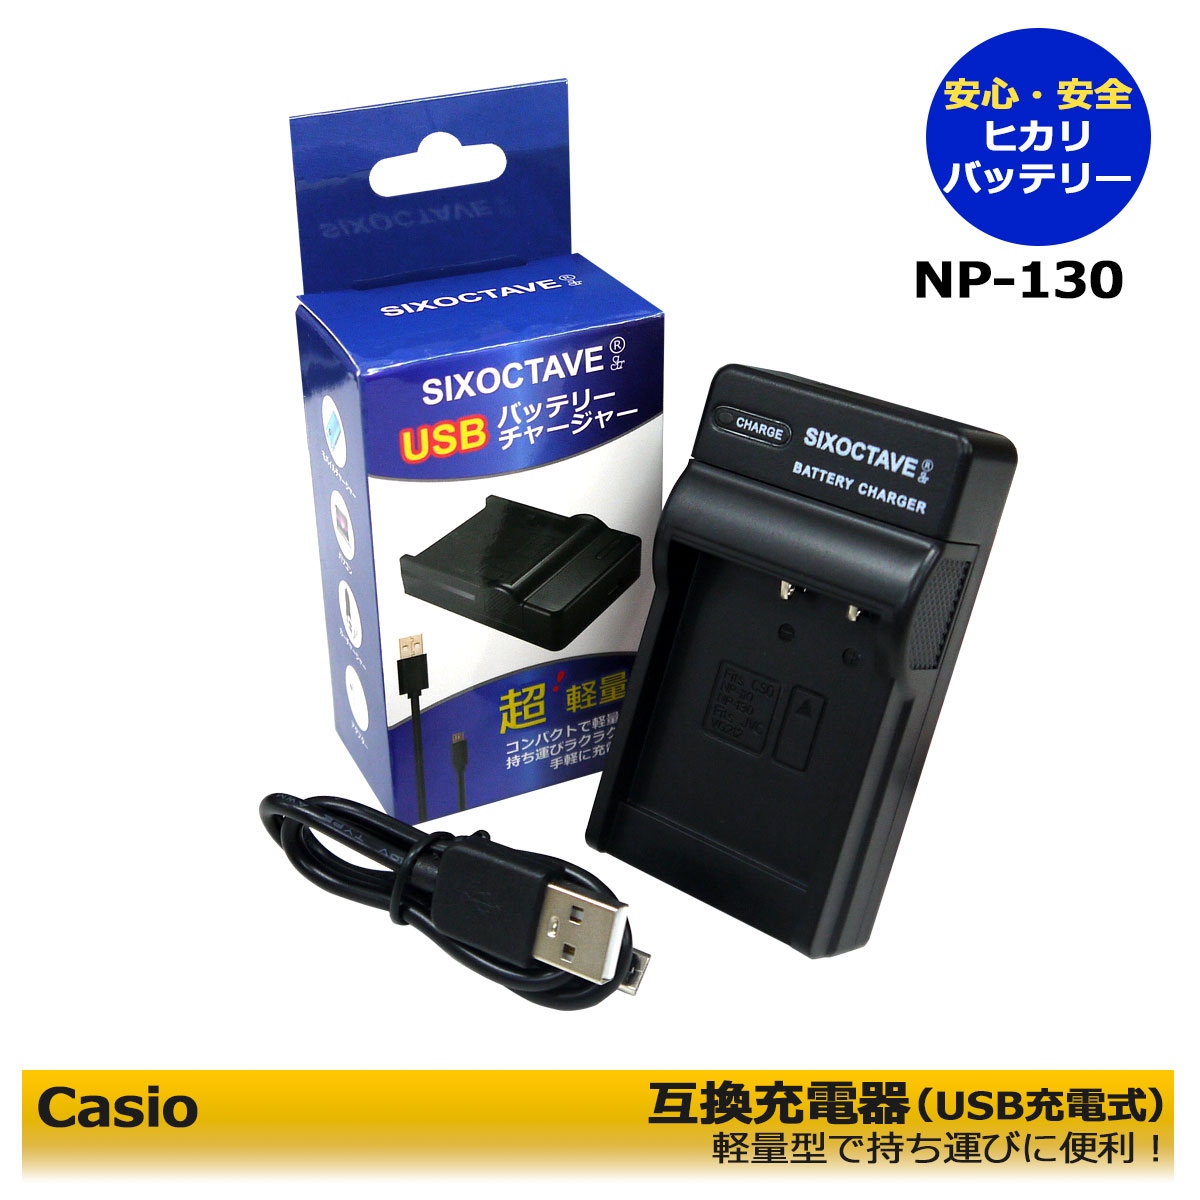 EXILIM 【あす楽対応】Casio NP-130 NP-110 NP-160 USB互換充電器 1点 CASIO Exilim EX-10 / EX-10BE / EX-100 / EX-100F / EX-100PRO / EX-H30 / EX-H35 / EX-SC100 / EX-SC200 / EX-FC300S / EX-FC400 / EX-FC400S / Exilim Zoom EX-Z2000 / Exilim Zoom EX-Z2300